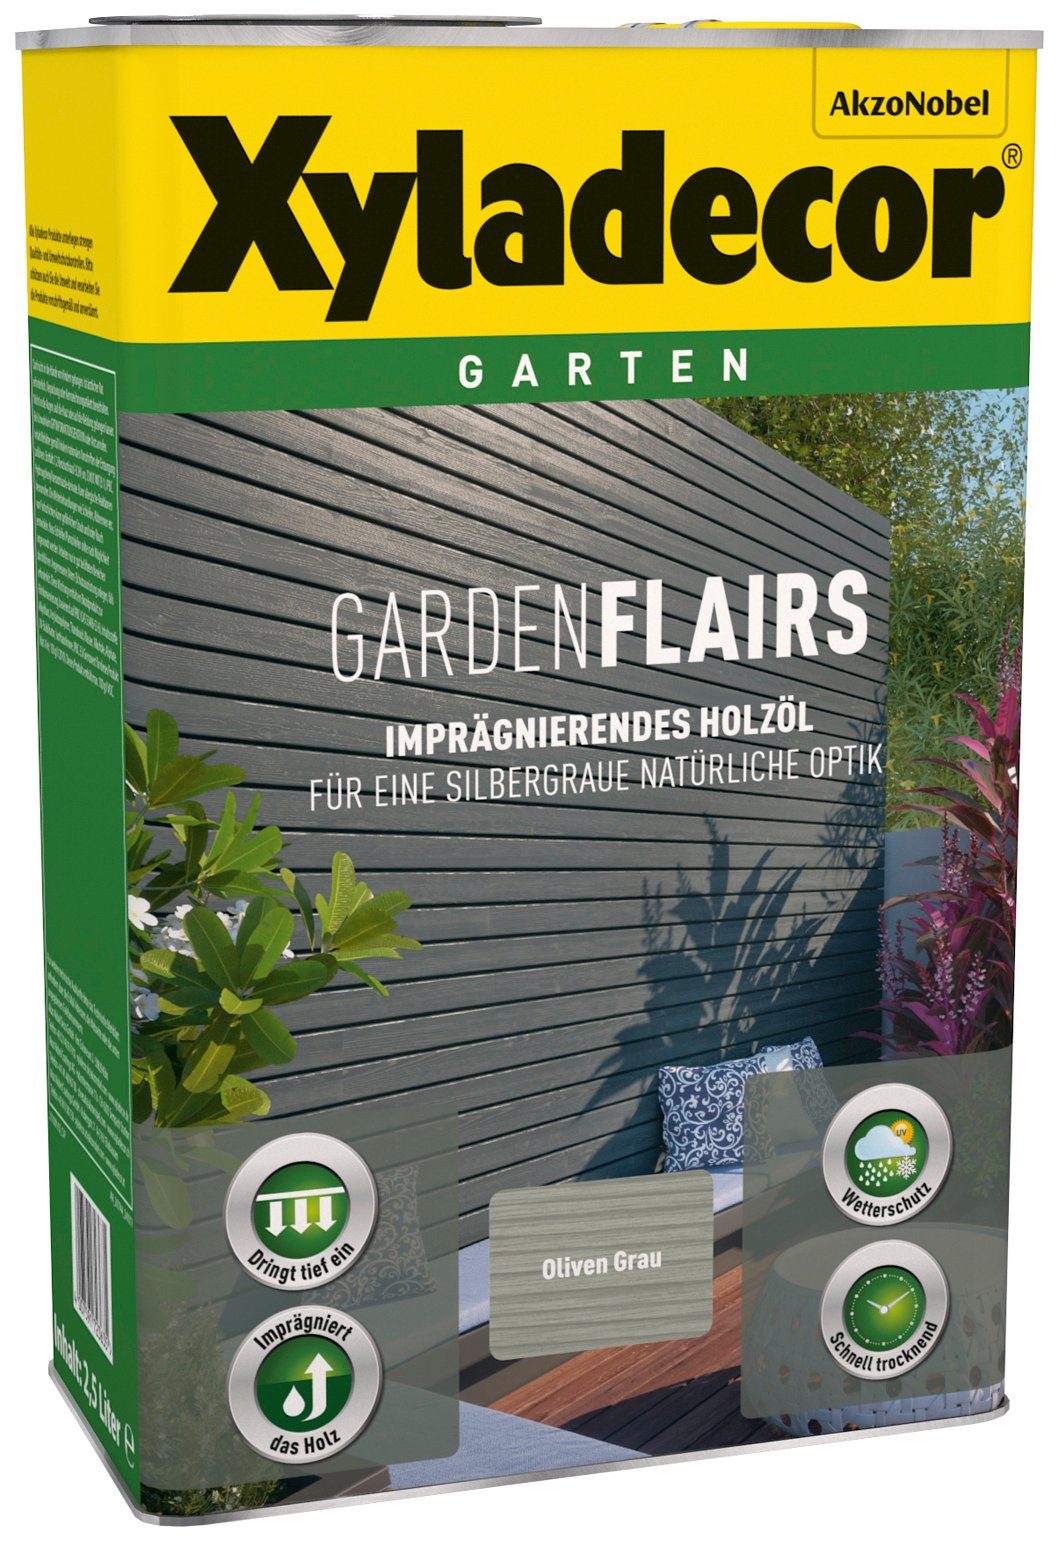 Xyladecor  Holzöl Garden Flairs, für Gartengestaltung, olivengrau, 0,75 l